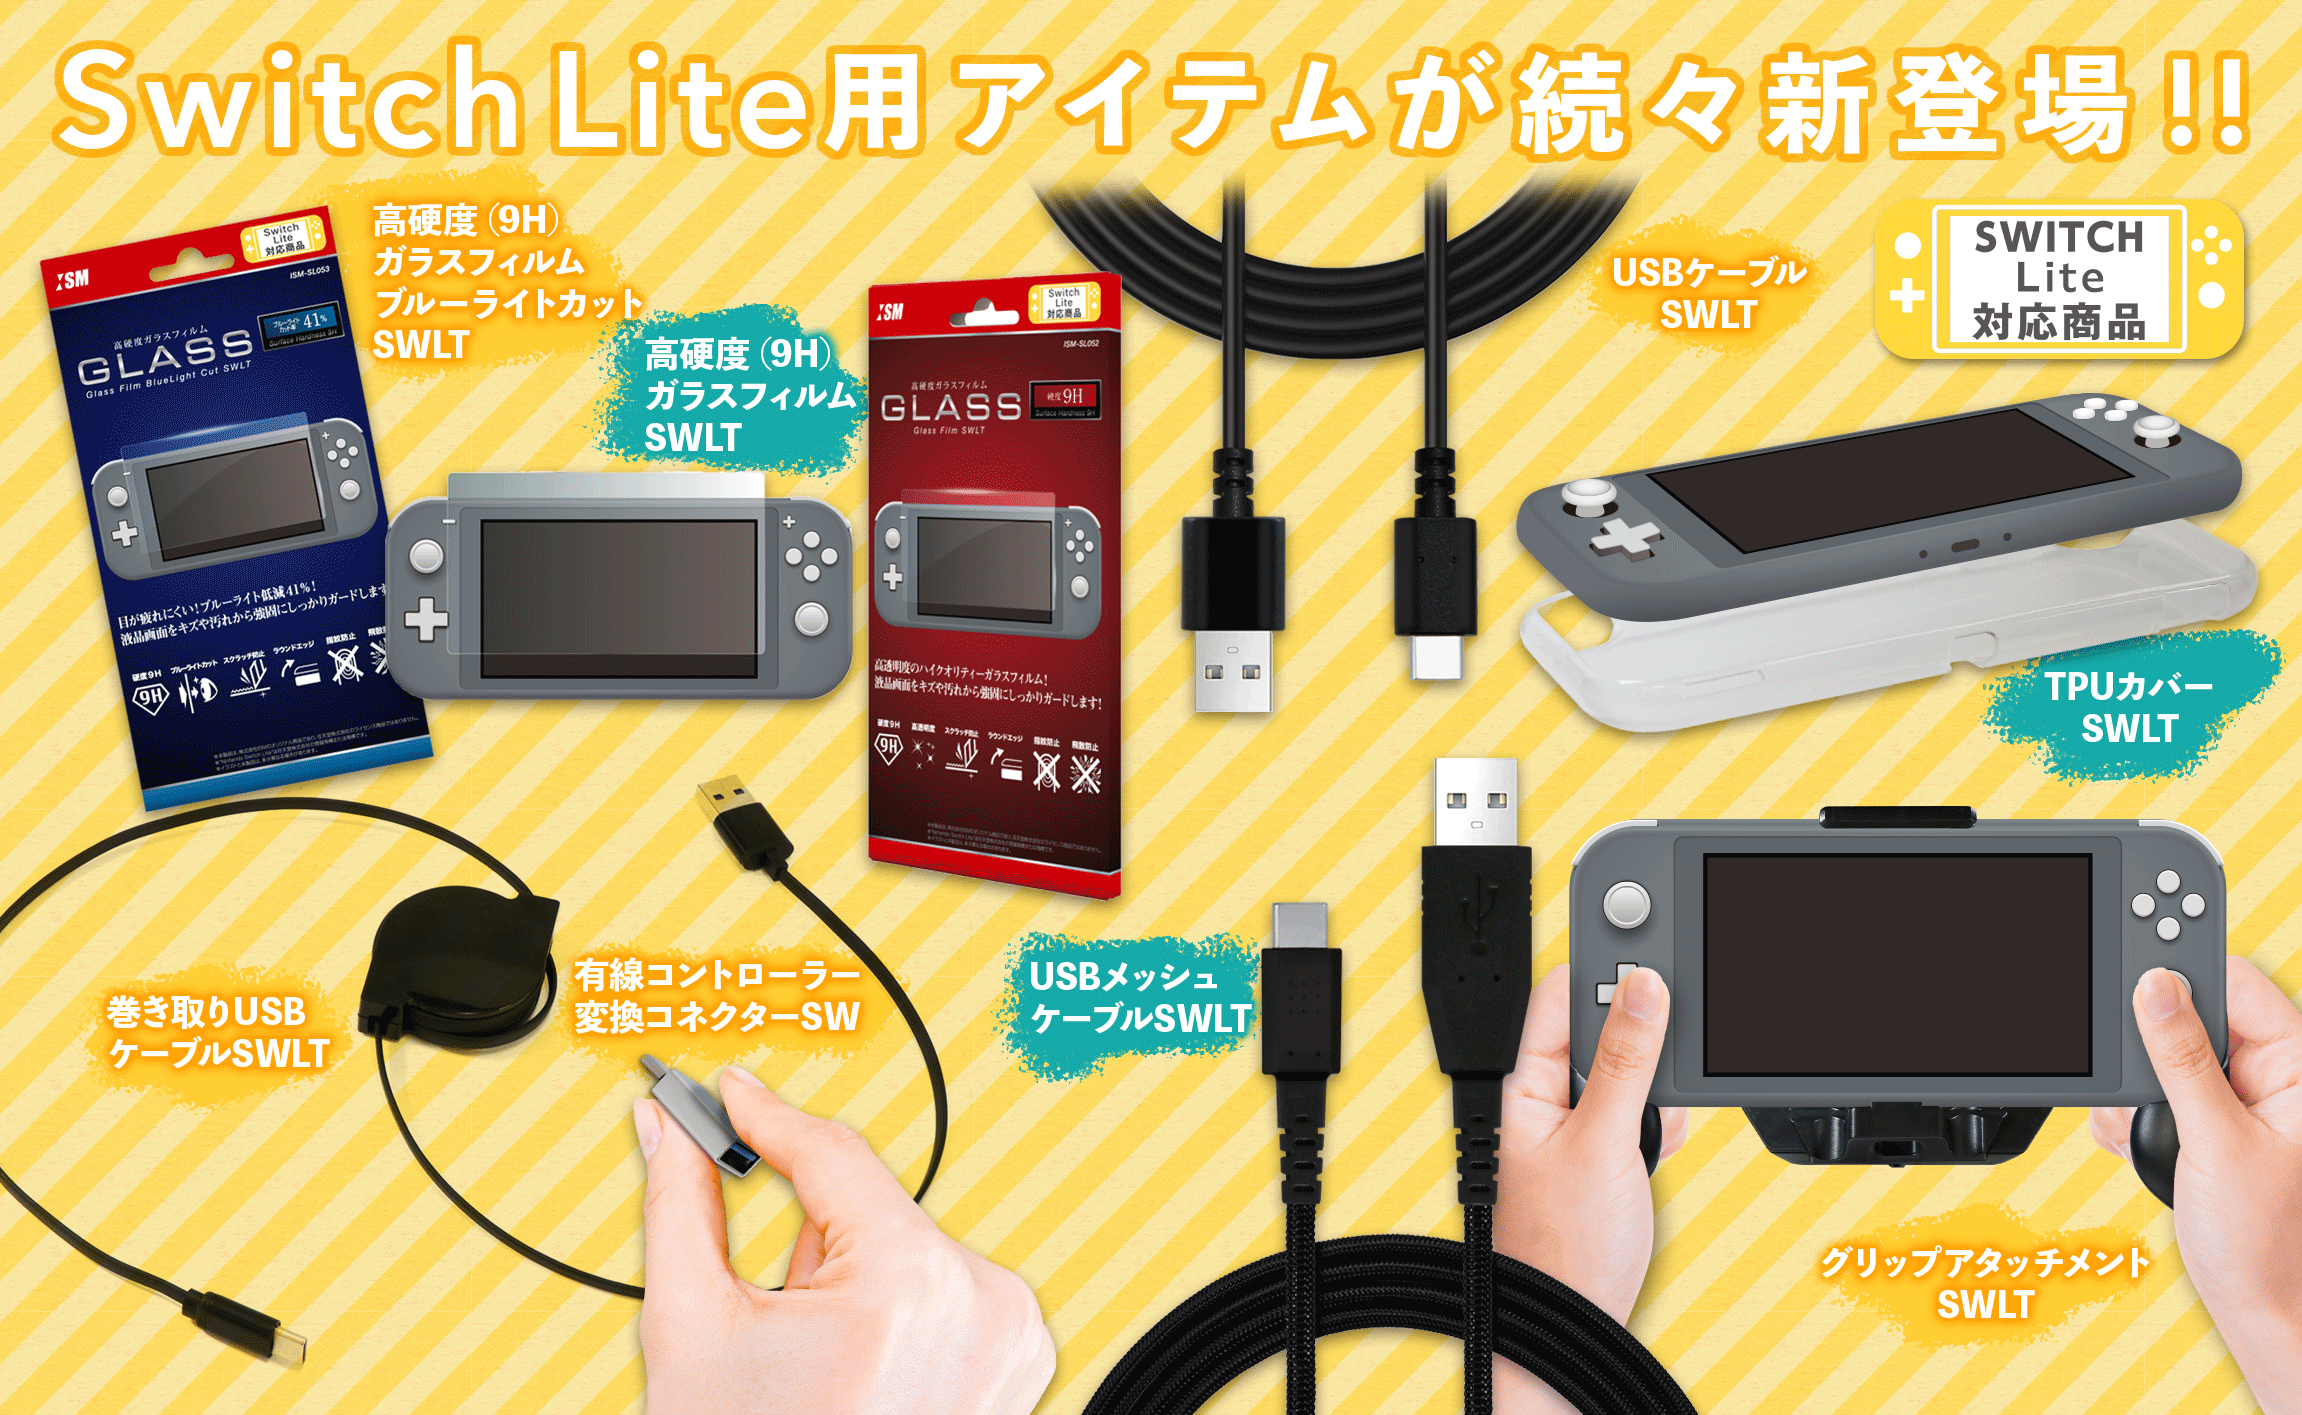 株式会社アクラスと株式会社ISMが「Nintendo Switch Lite」用の 